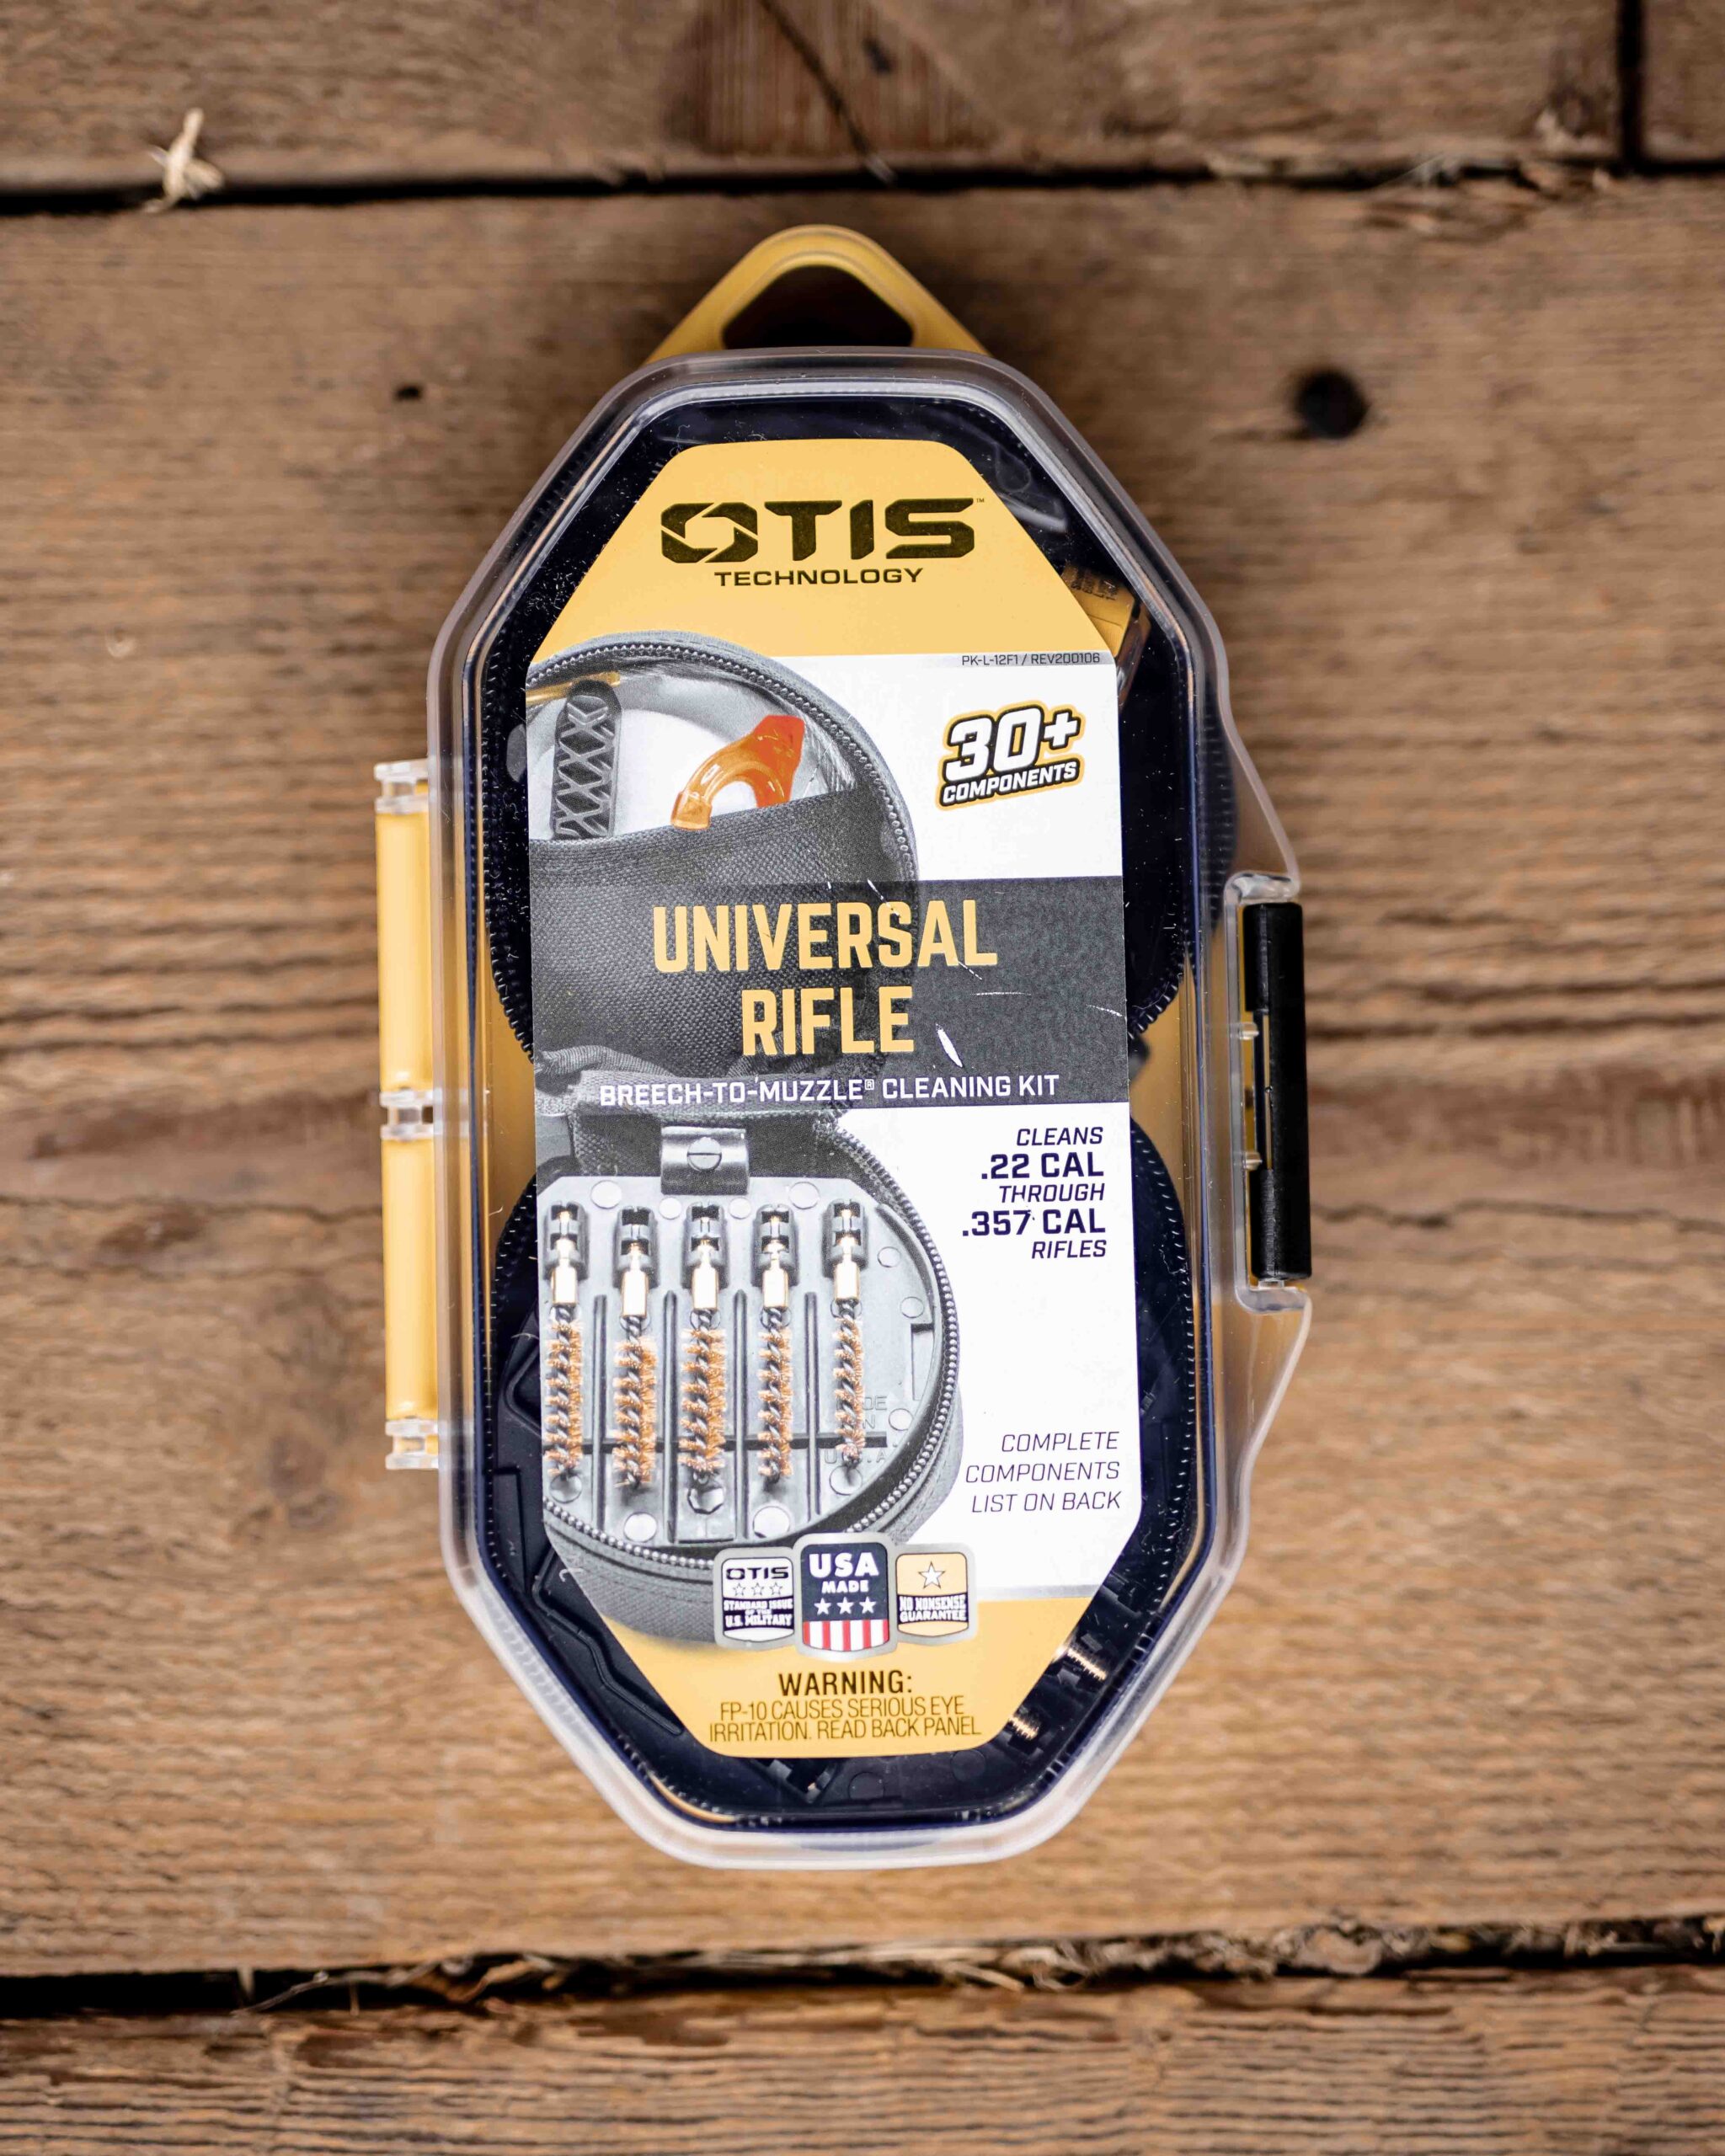 OTIS Universal Rifle Cleaning Kit